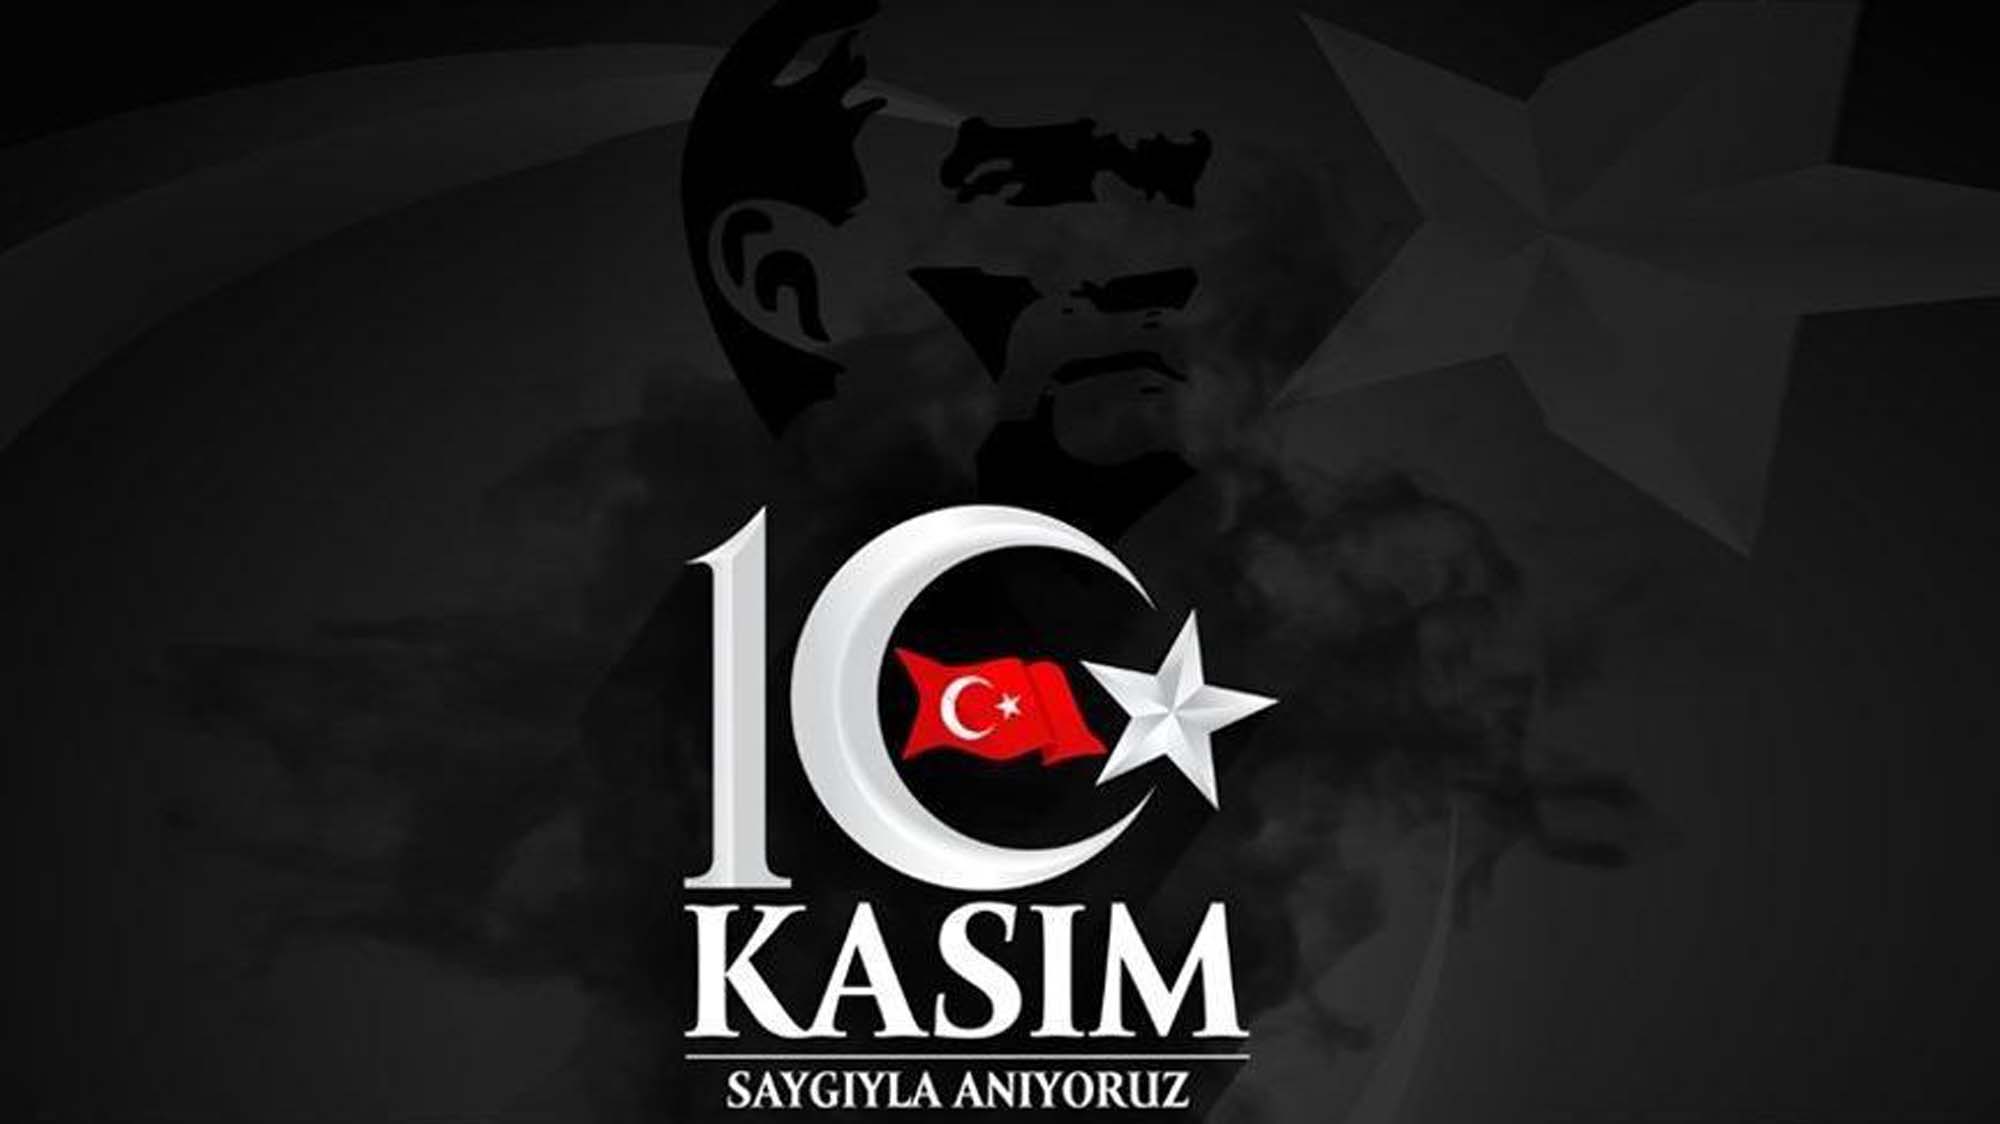 10 Kasım Atatürk'ü Anma Günü ile ilgili şiirler 2021